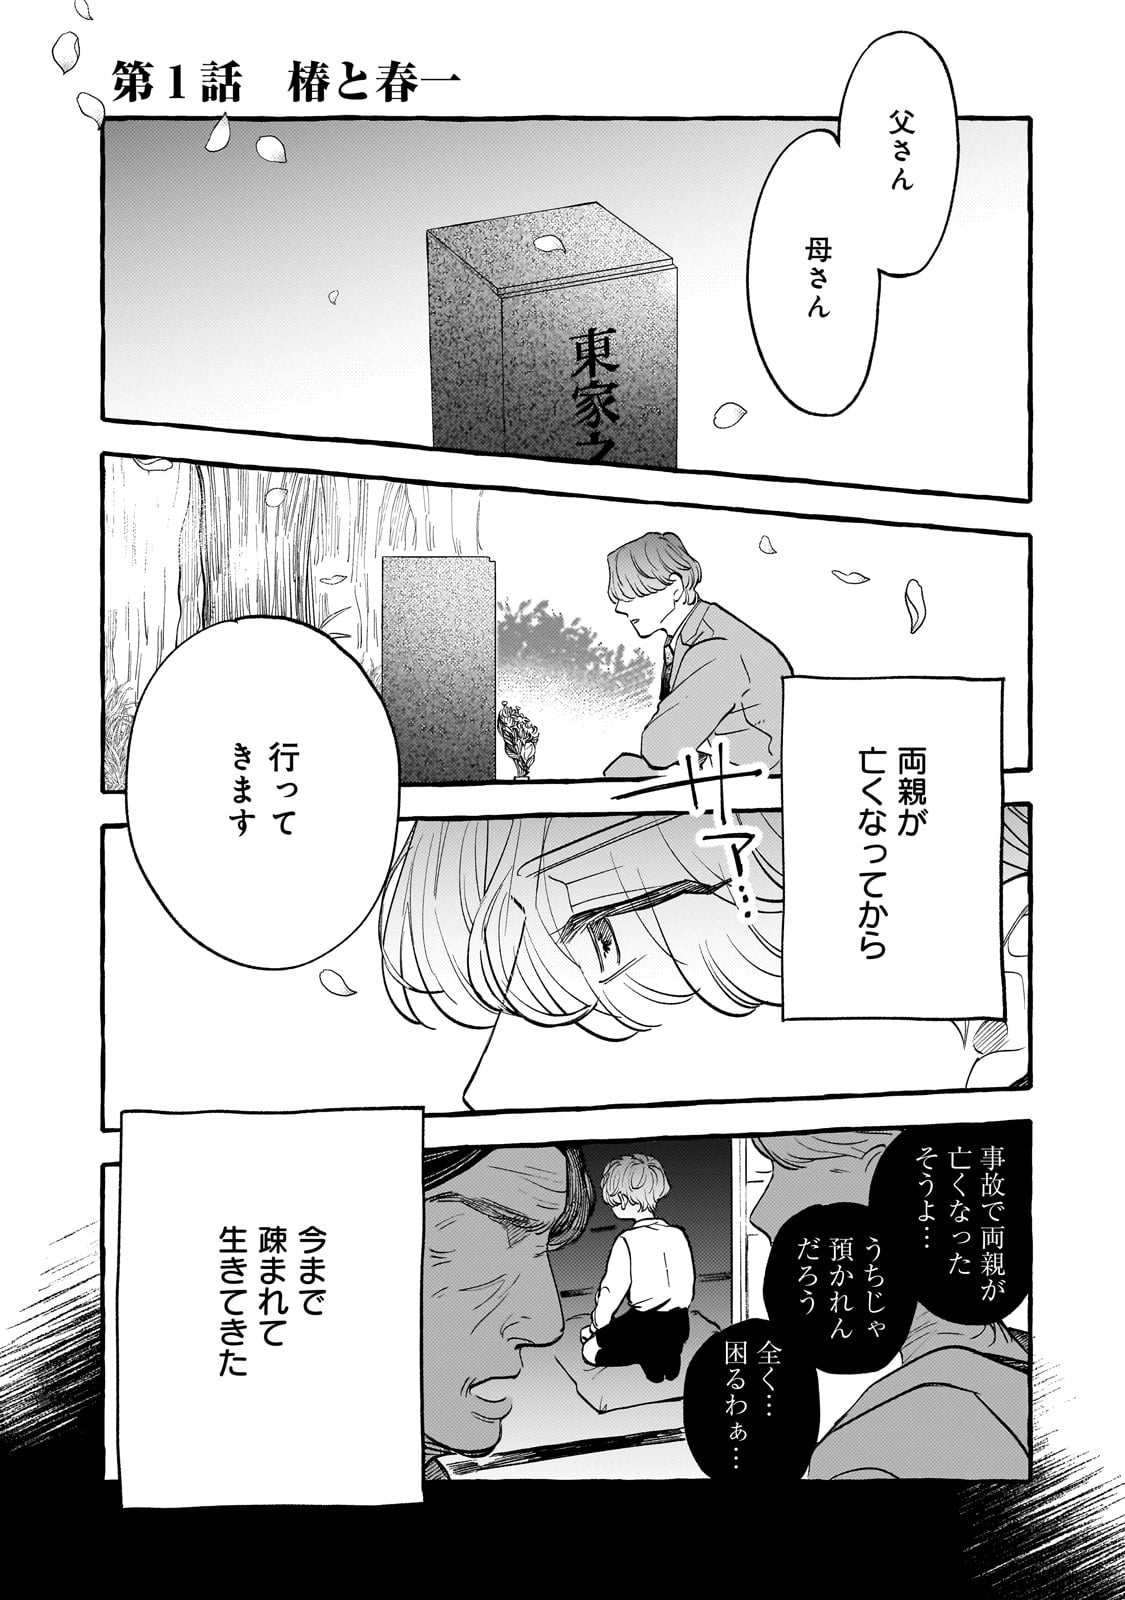 Koi Hajime wa Ocha yuku Tsubaki no shita de - Chapter 1 - Page 1